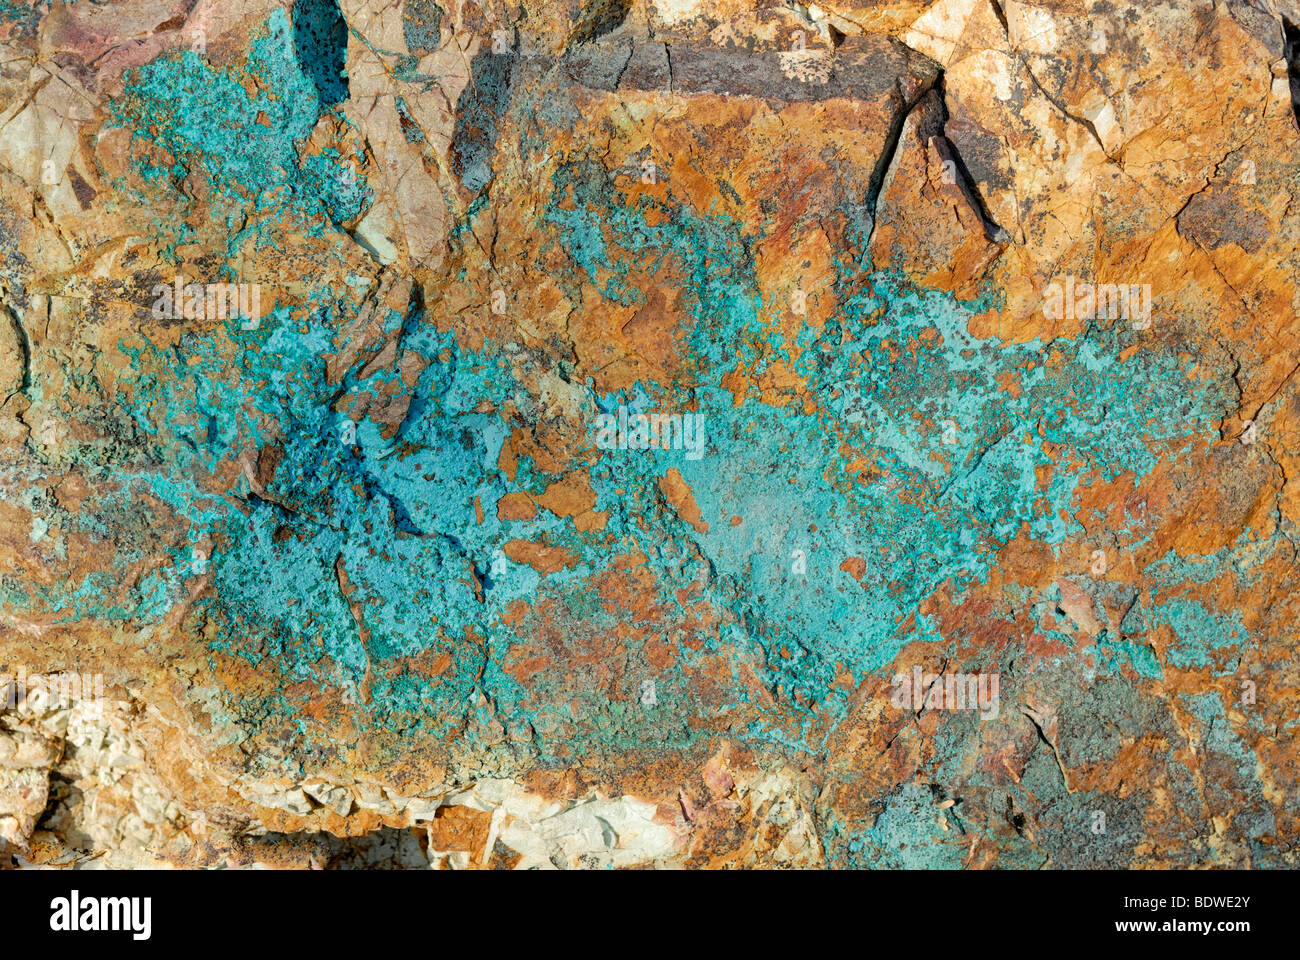 Les roches contenant du cuivre, désert de Sonora, en Arizona, USA Banque D'Images